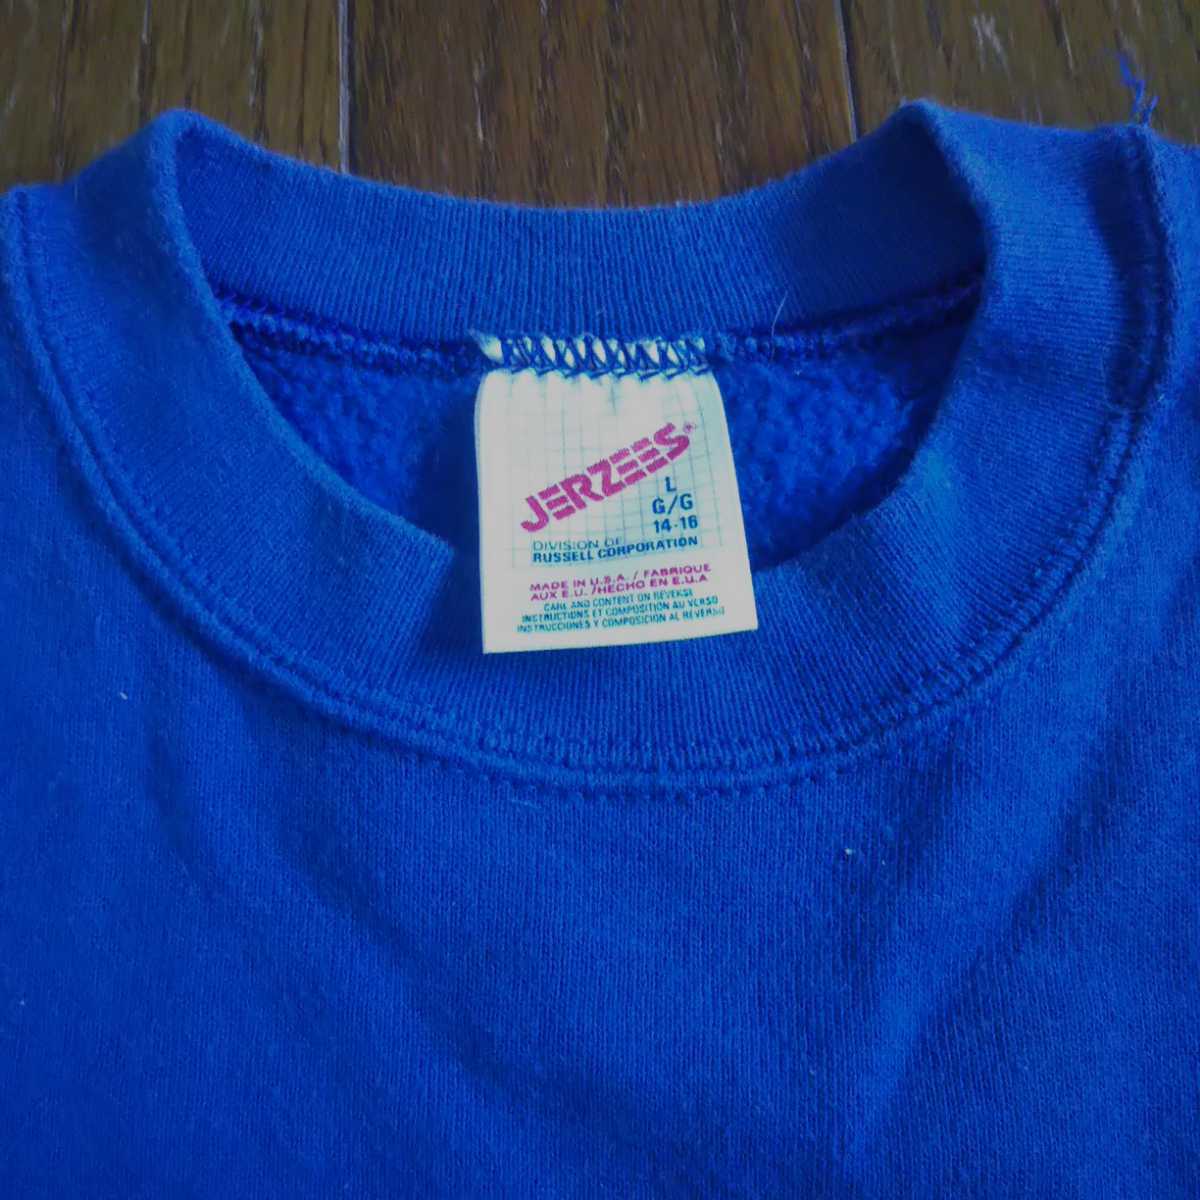  б/у одежда Jerseys тренировочный тренировочные брюки футболка синий голубой Logo колледж женский мужской для мужчин и женщин Vintage Vintage 